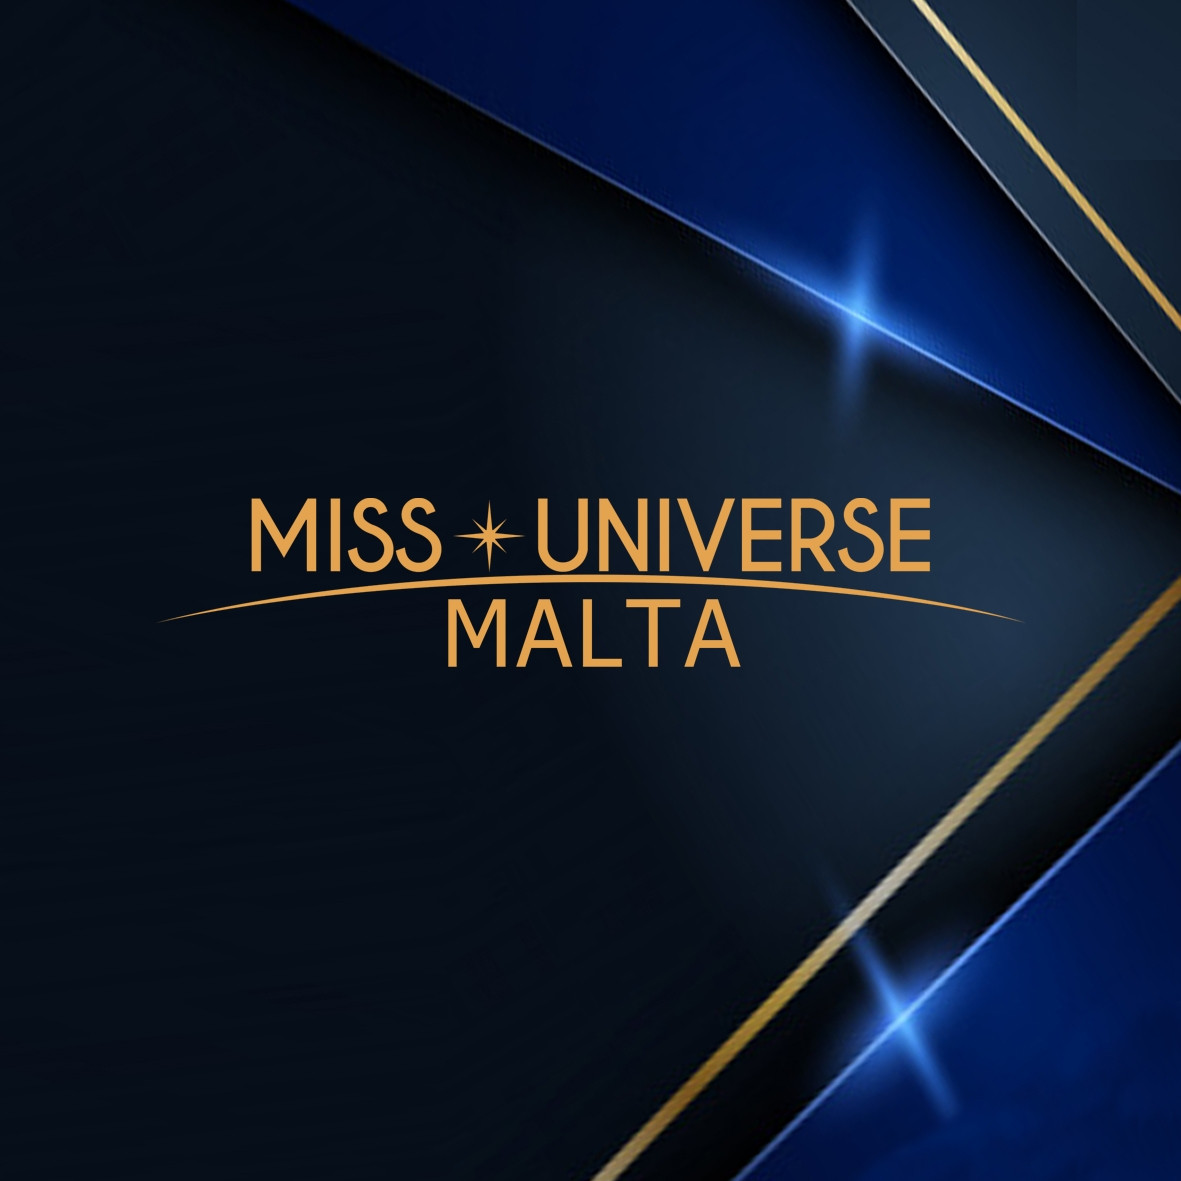 candidatas a miss universe malta 2021. final: 17 sep. - Página 2 RkDLJV